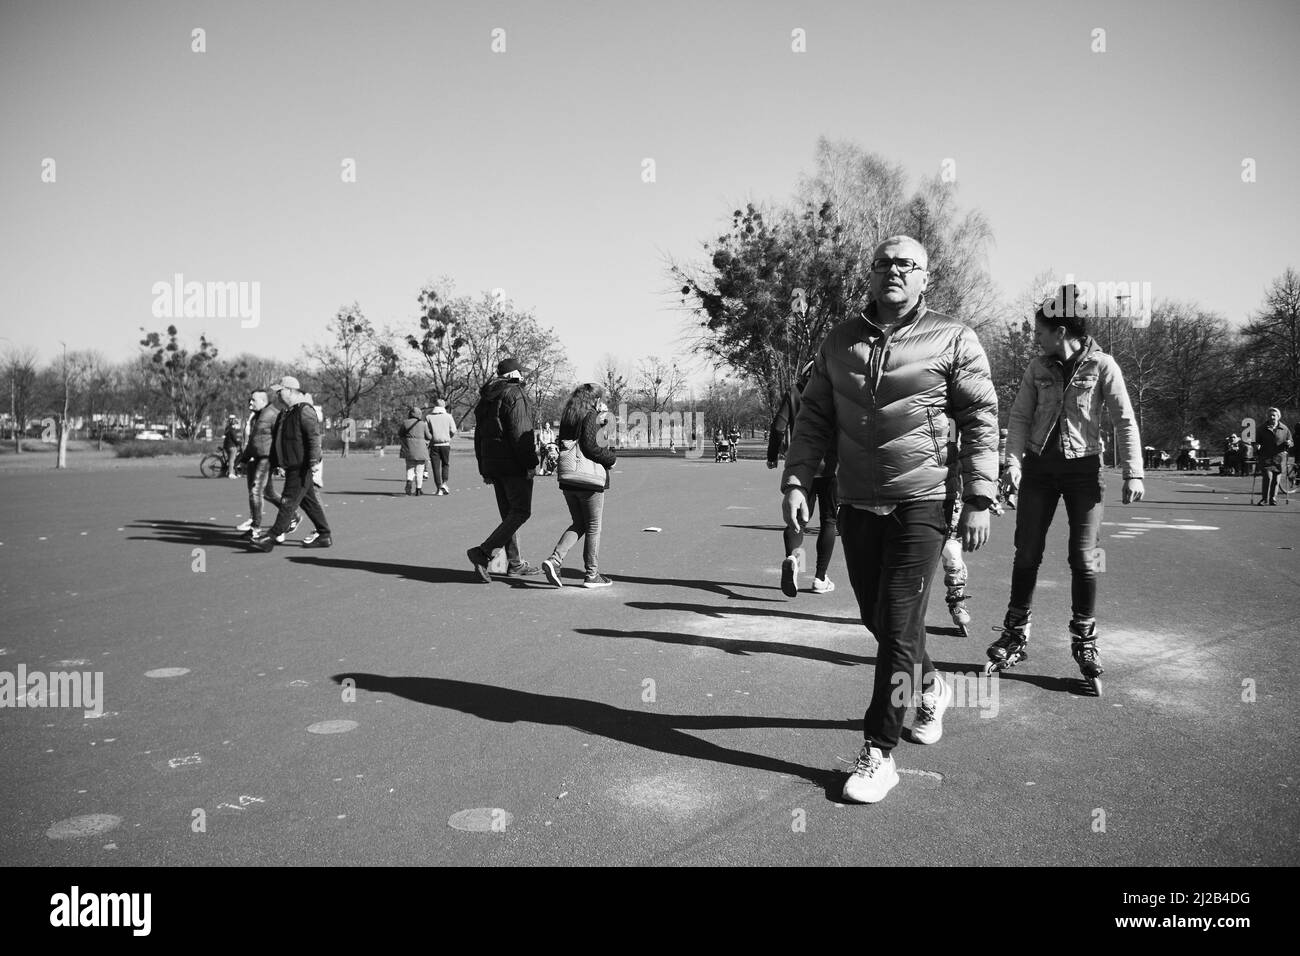 Una foto en escala de grises de personas caminando por la zona de asfalto en el parque Jan Pawla Foto de stock